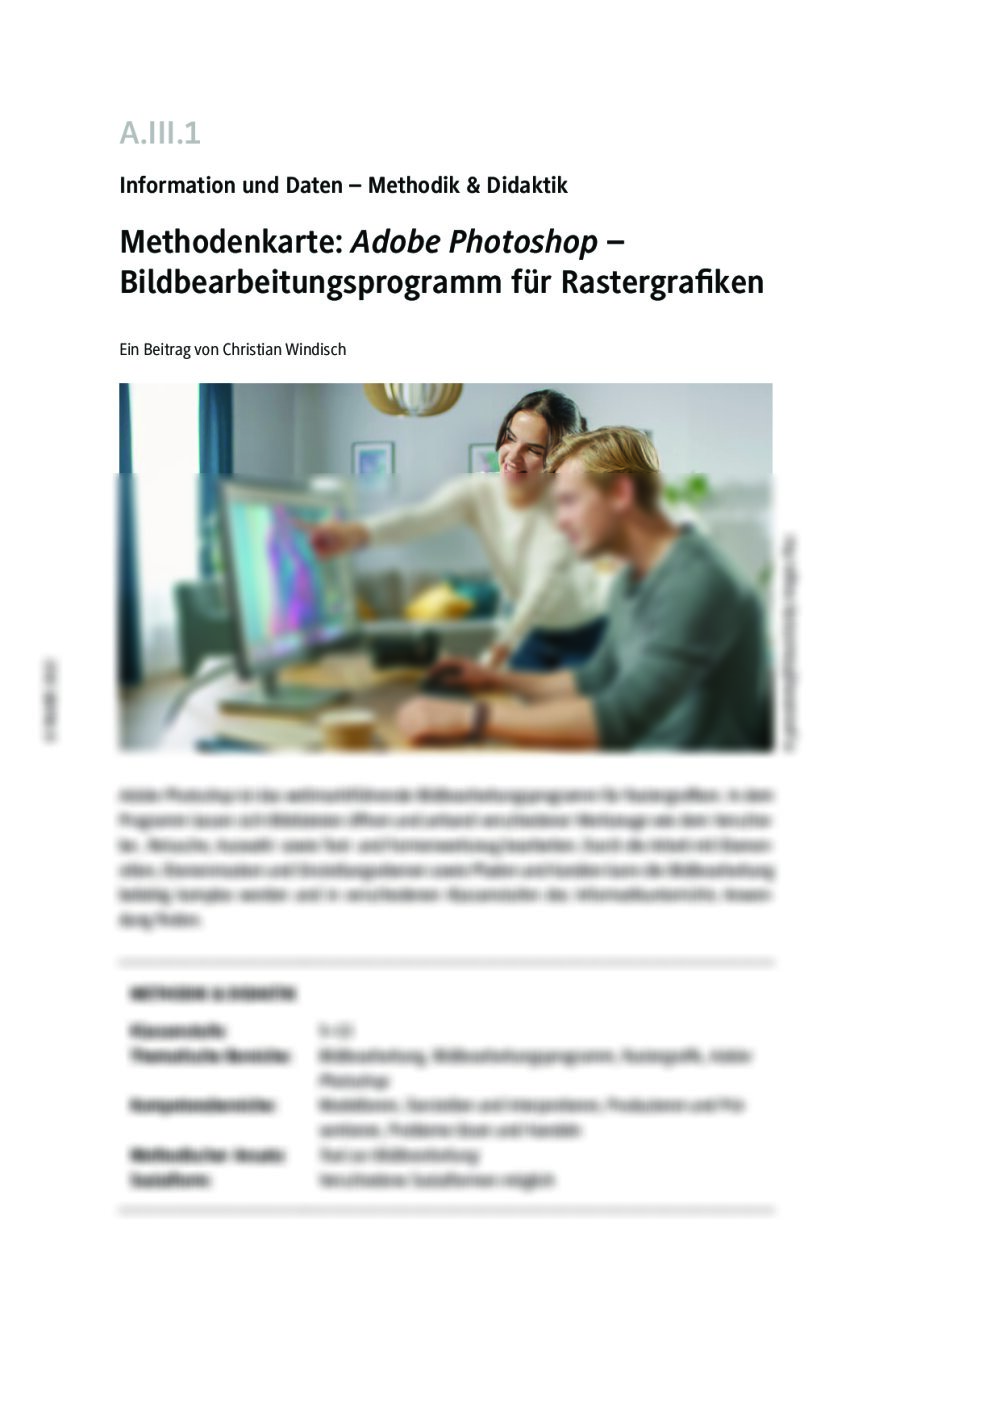 Methodenkarte: Adobe Photoshop - Seite 1